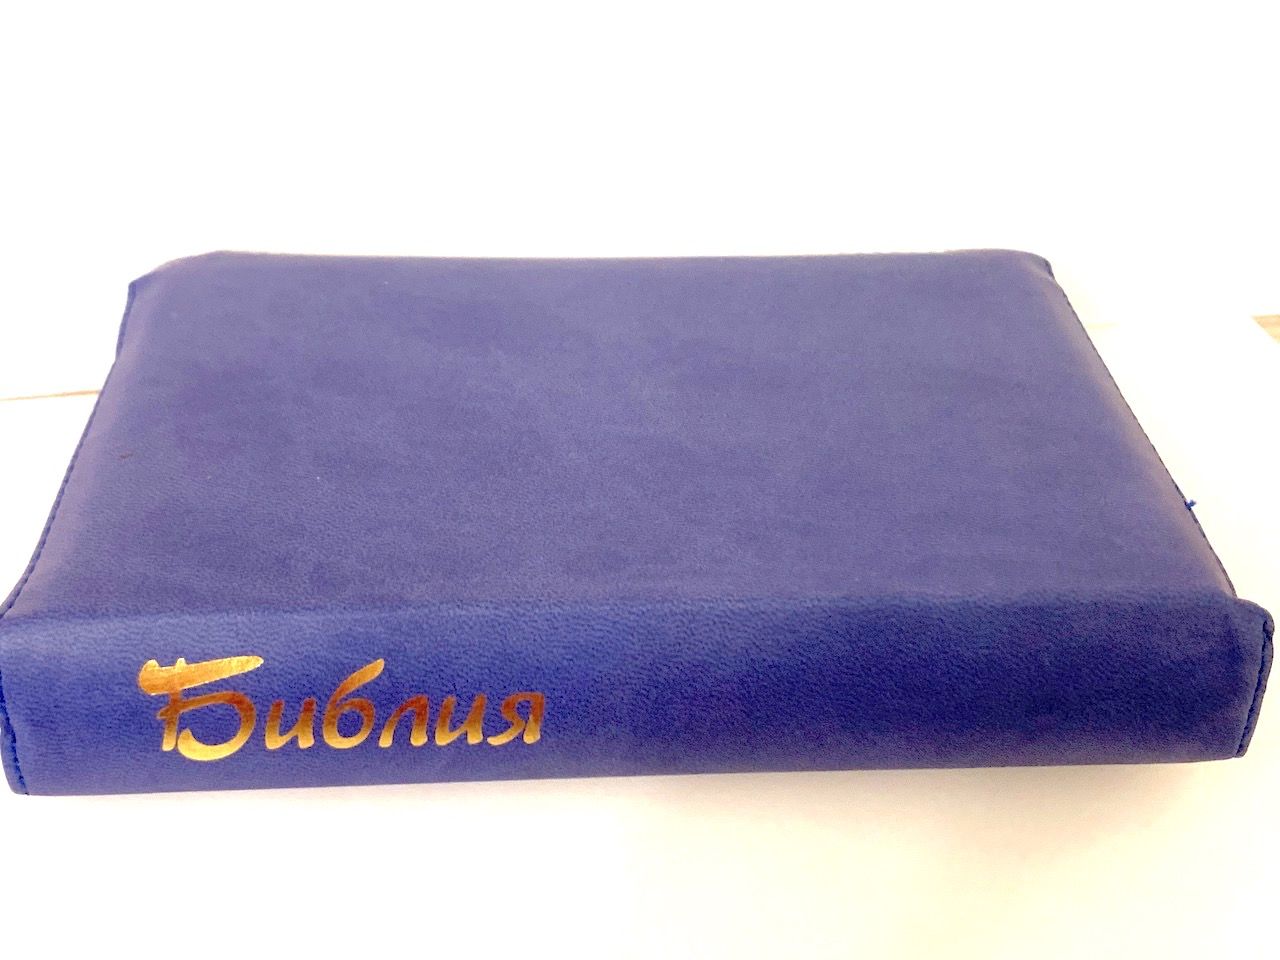 БИБЛИЯ 046DTzti формат, переплет из искусственной кожи на молнии с индексами, надпись золотом "Библия", синий/салатовый полукругом, средний формат, 132*182 мм, цветные карты, шрифт 12 кегель